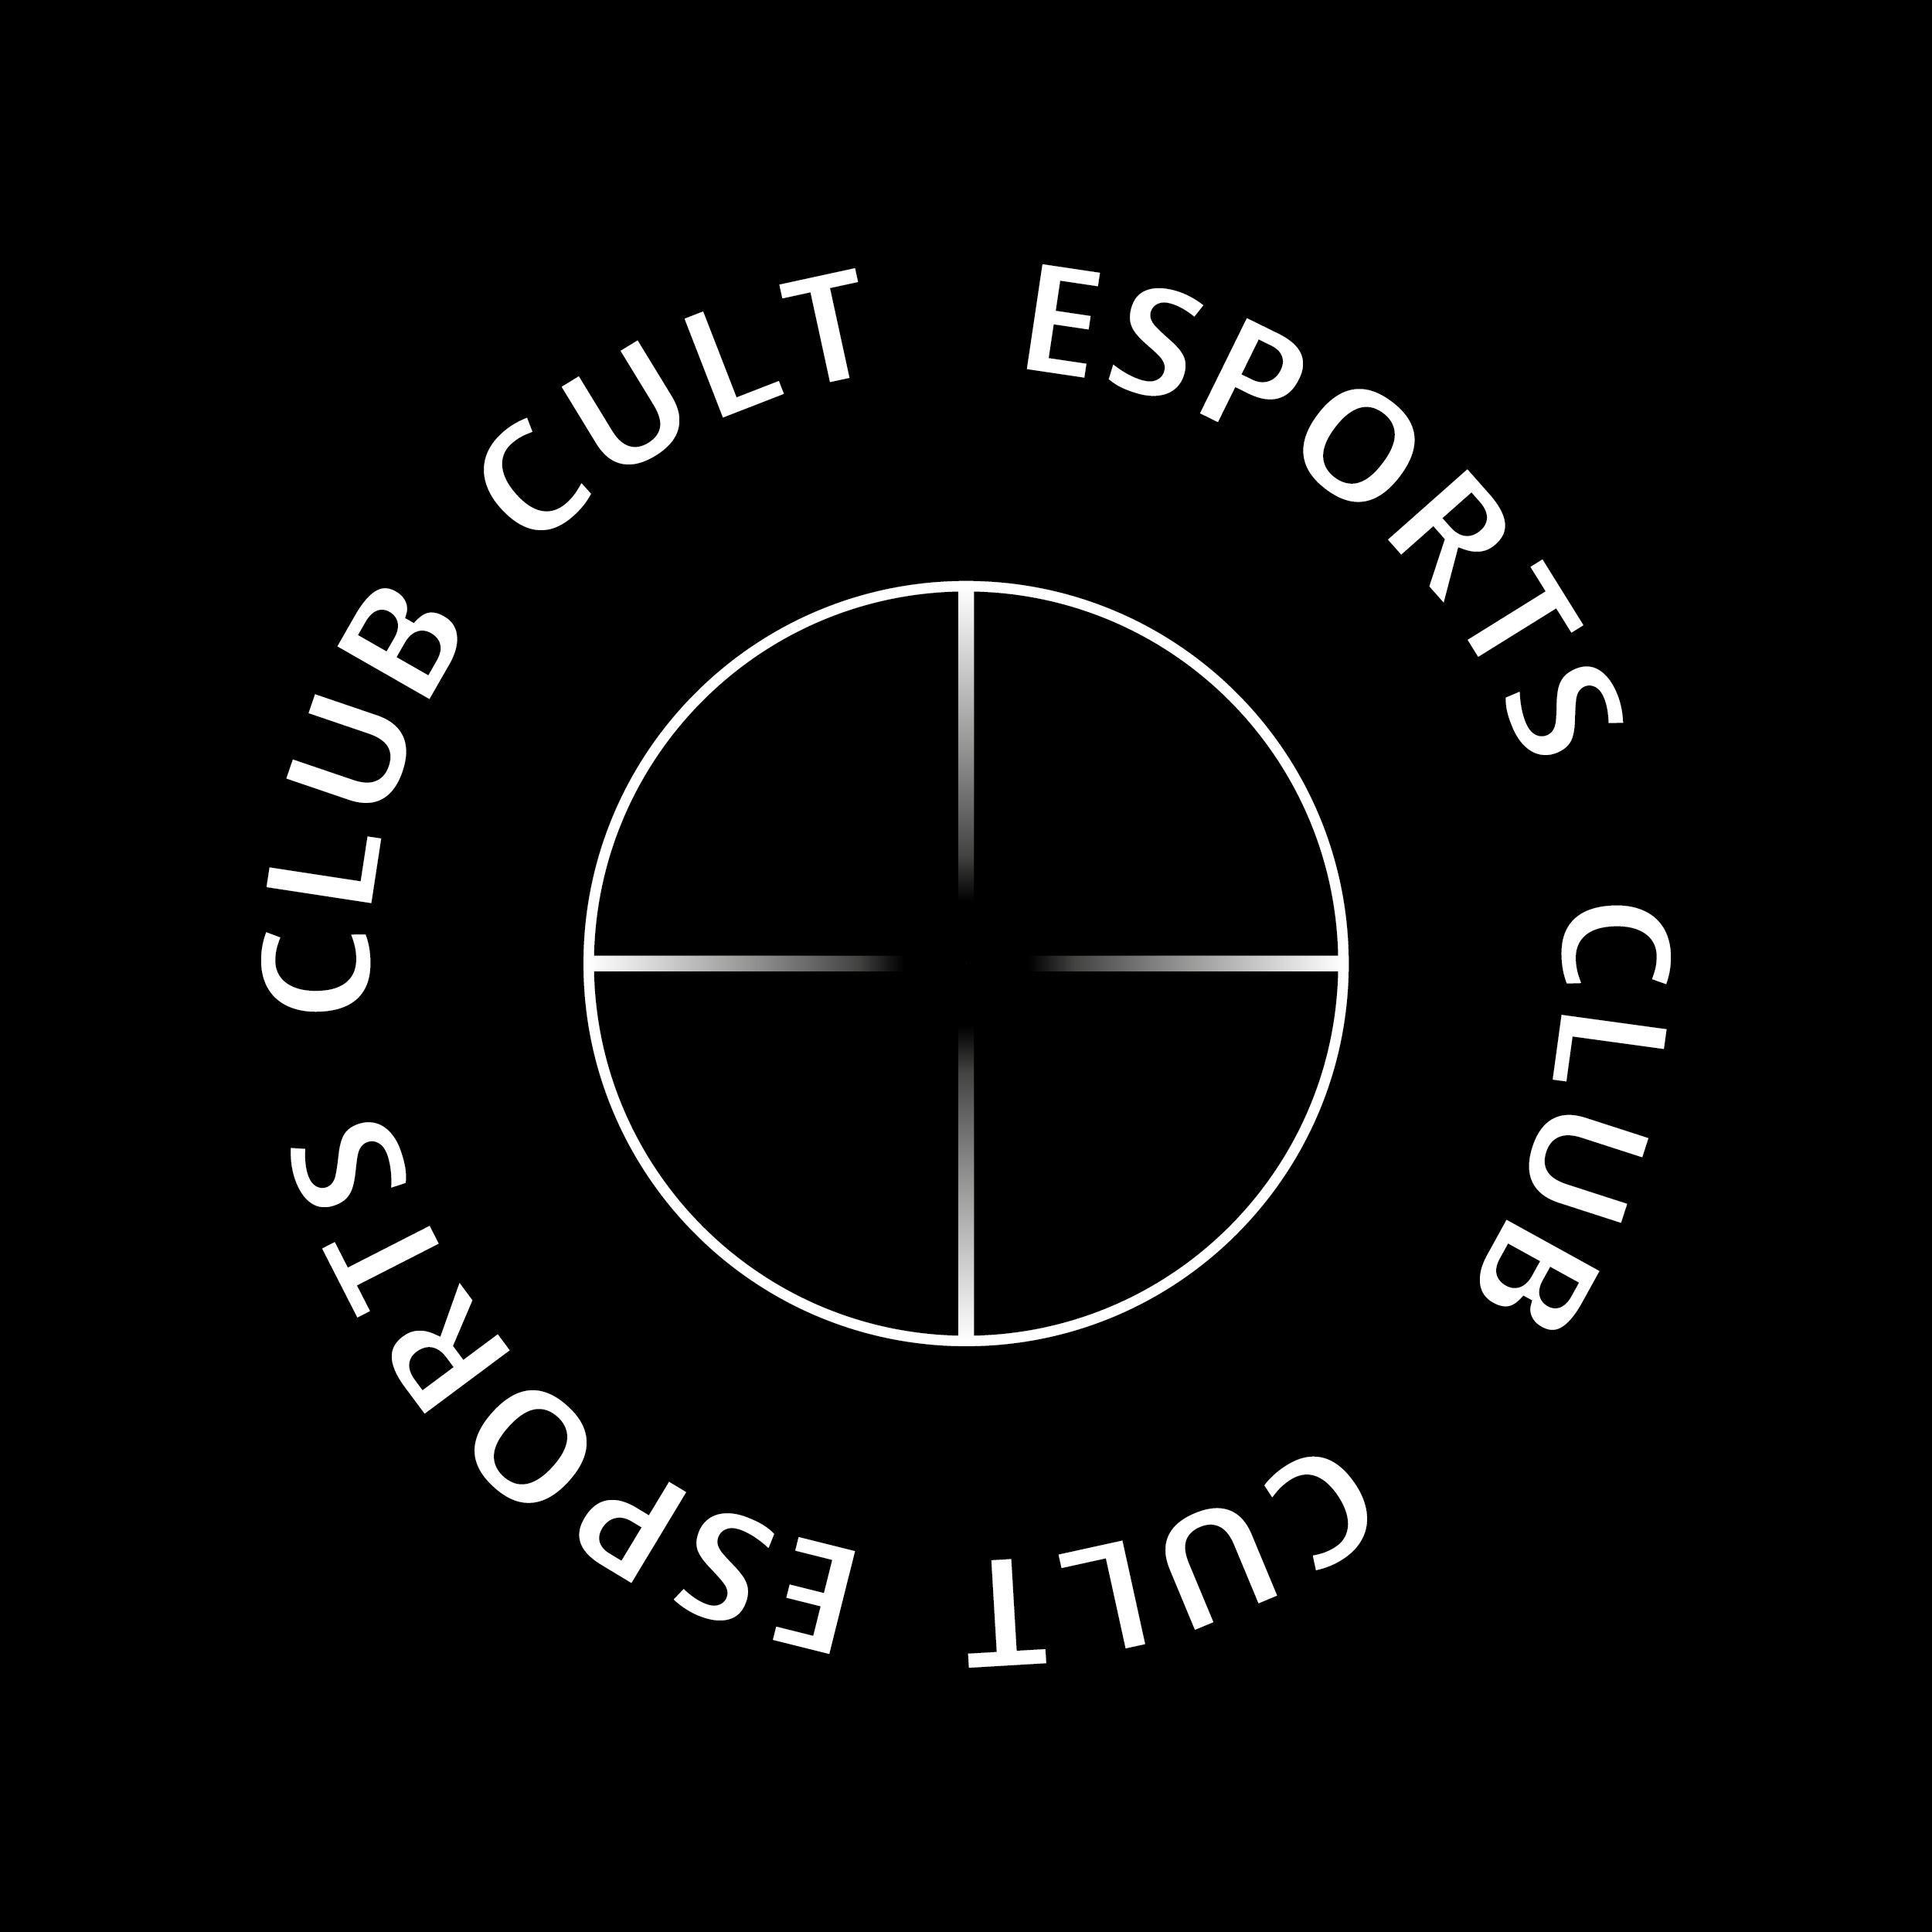 CULT Esports